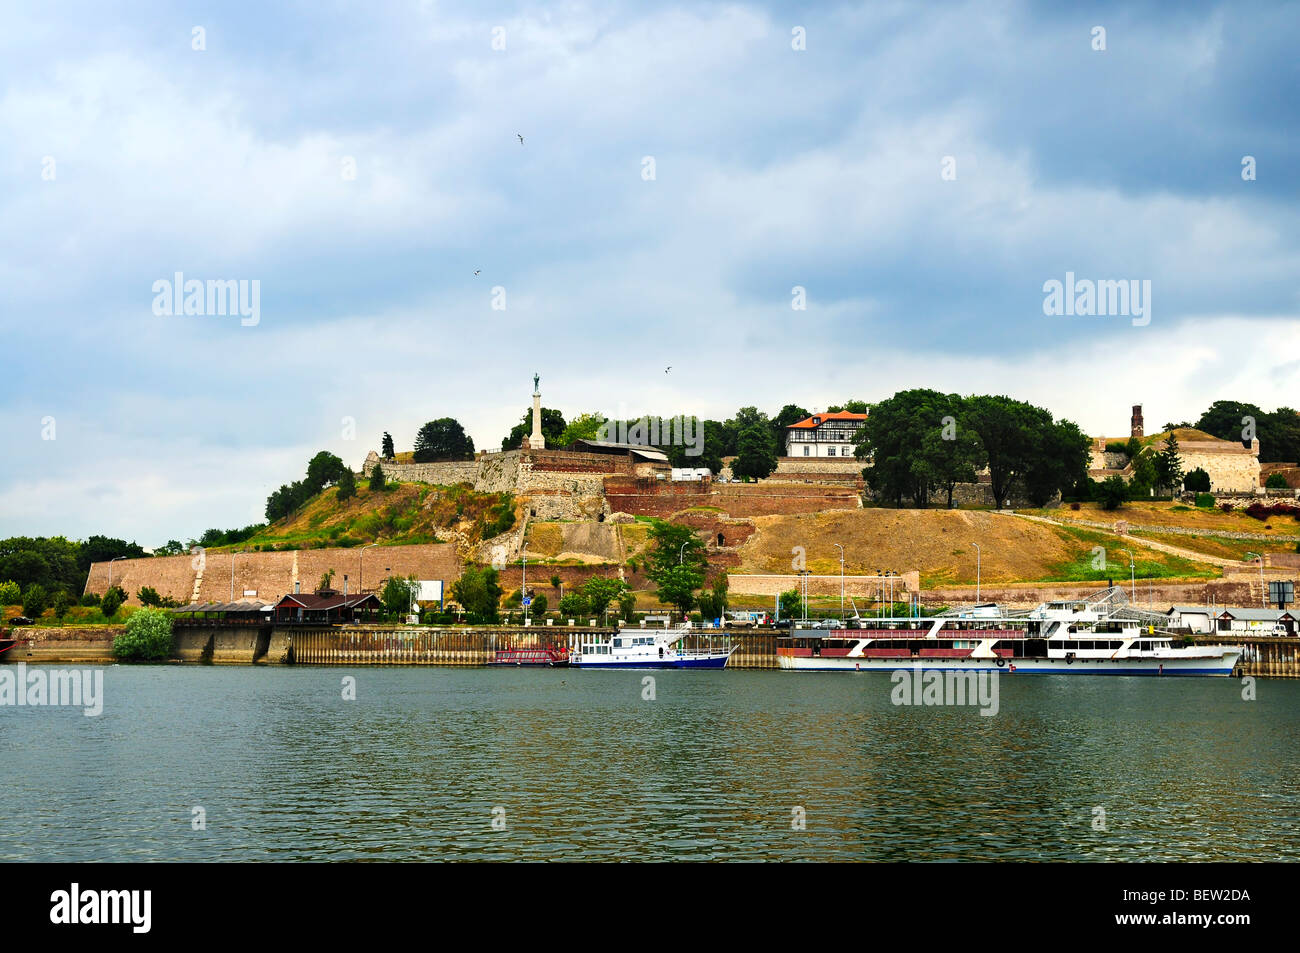 Kalemegdan fortress in Belgrade seen from Danube river Stock Photo